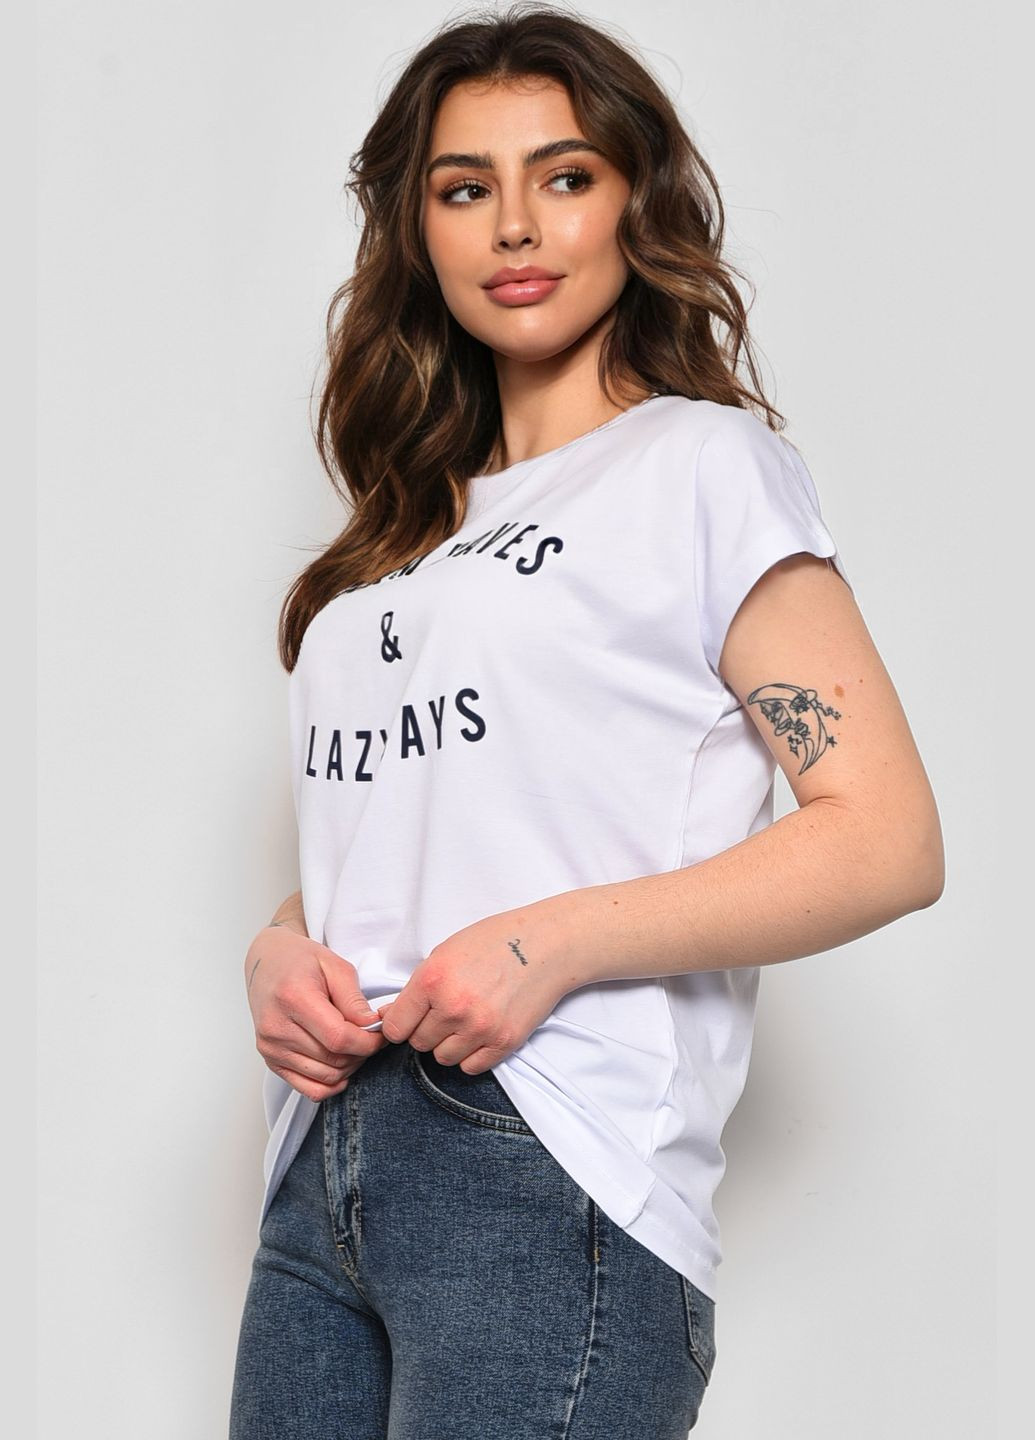 Белая летняя футболка женская полубатальная с надписью белого цвета Let's Shop